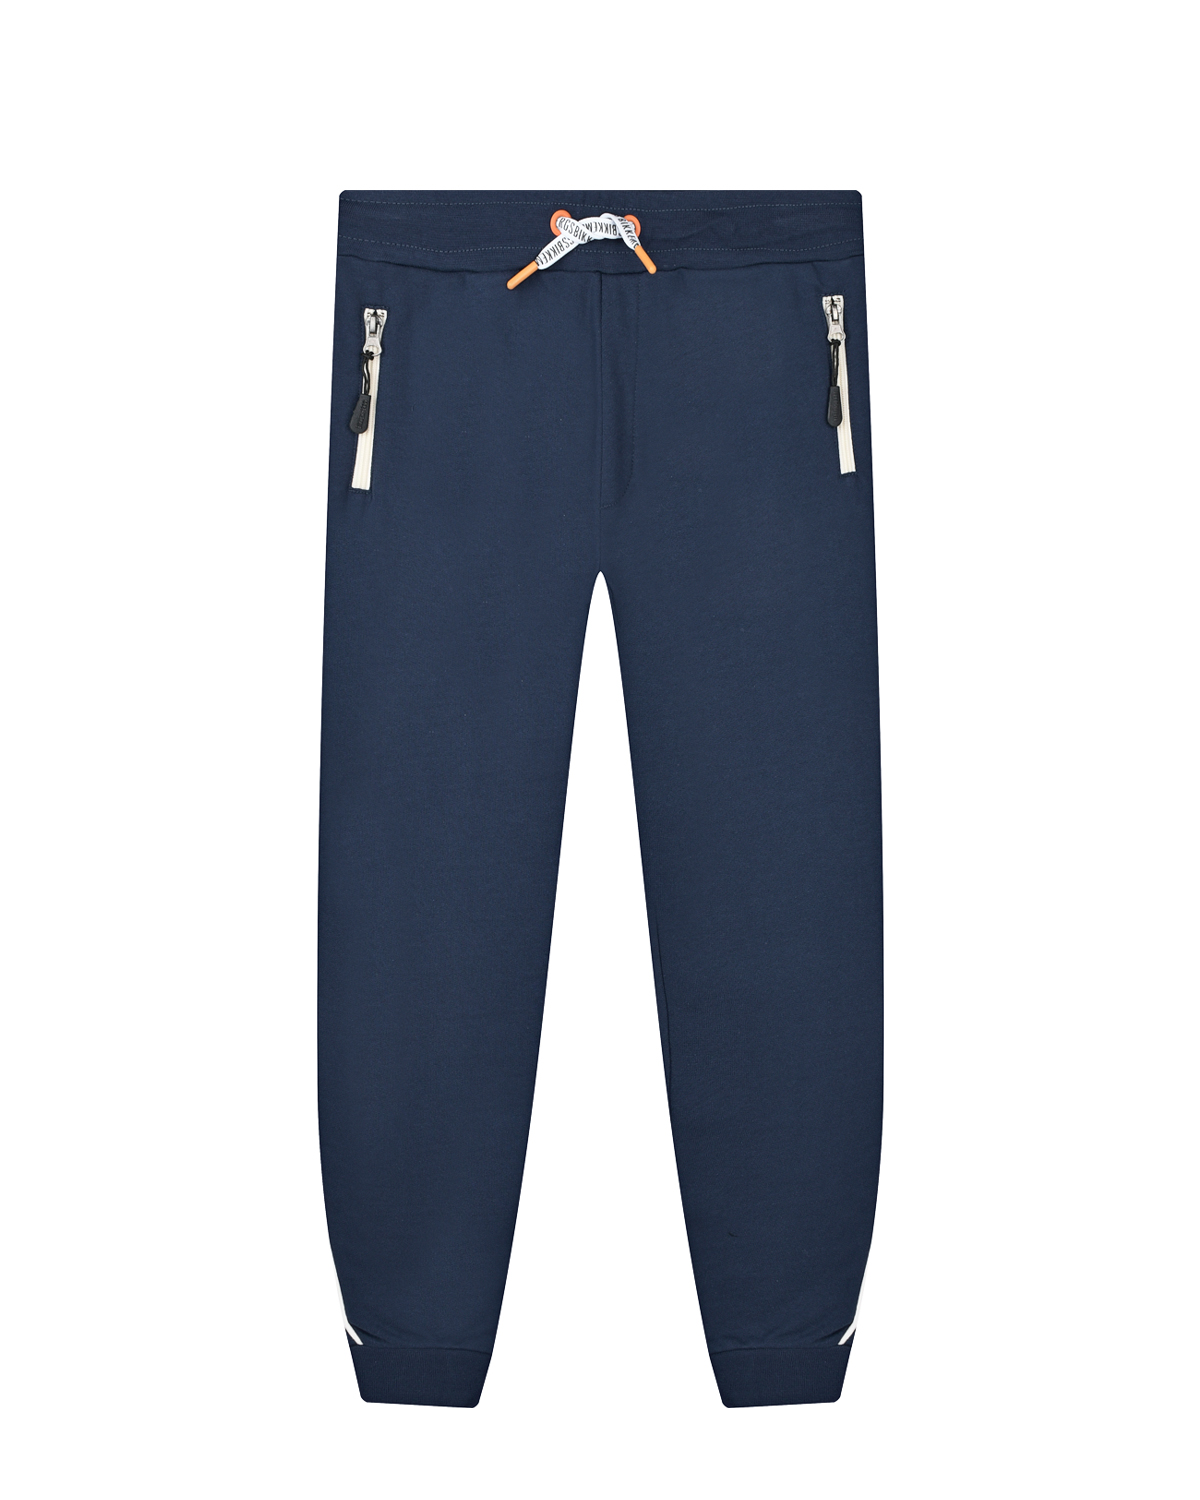 Синие спортивные брюки с поясом на кулиске Bikkembergs детские, размер 164, цвет синий - фото 1